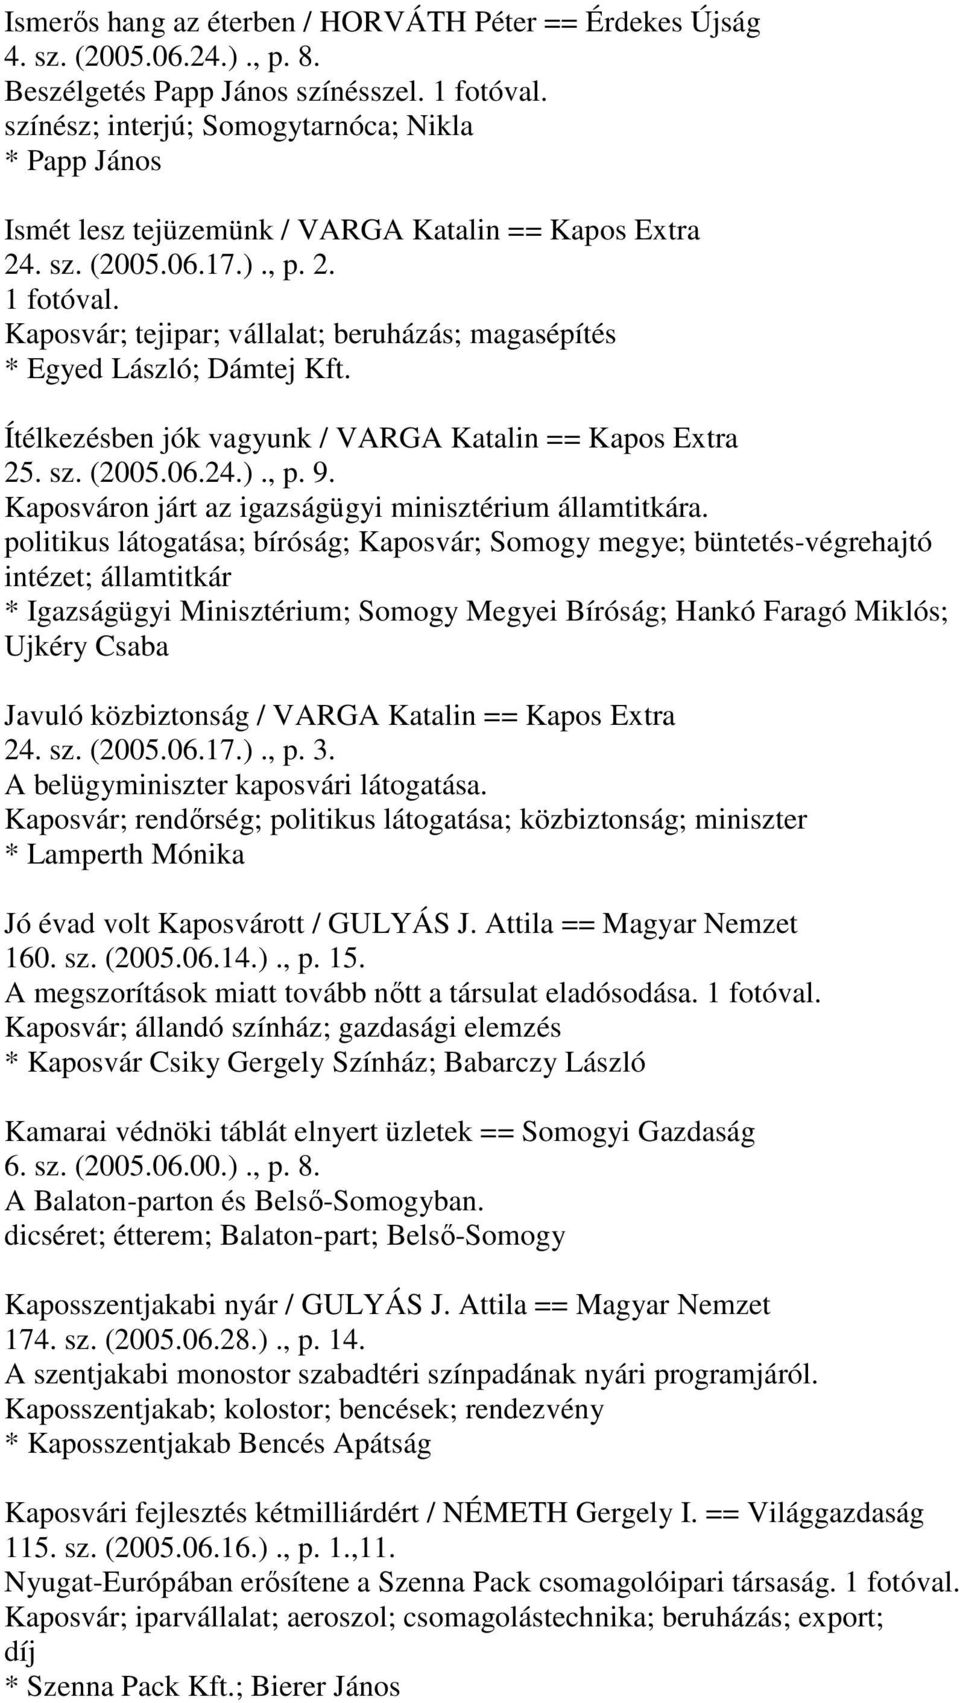 Kaposvár; tejipar; vállalat; beruházás; magasépítés * Egyed László; Dámtej Kft. Ítélkezésben jók vagyunk / VARGA Katalin == Kapos Extra 25. sz. (2005.06.24.)., p. 9.